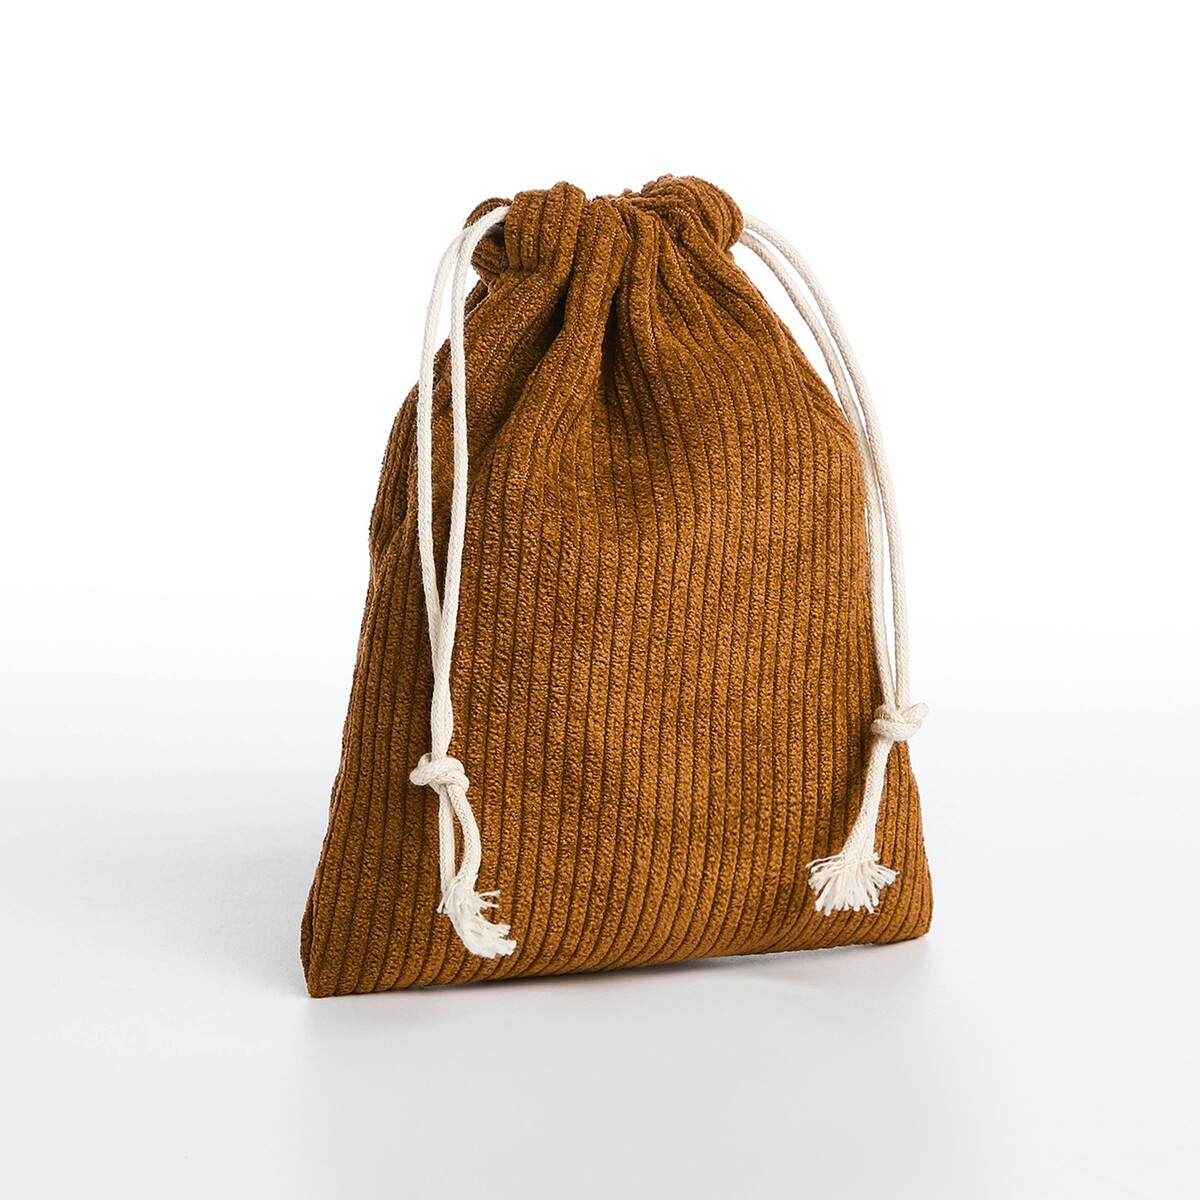 Косметичка - мешок с завязками, цвет коричневый кресло мешок пятигранный диаметр 82 см высота 110 см коричневый